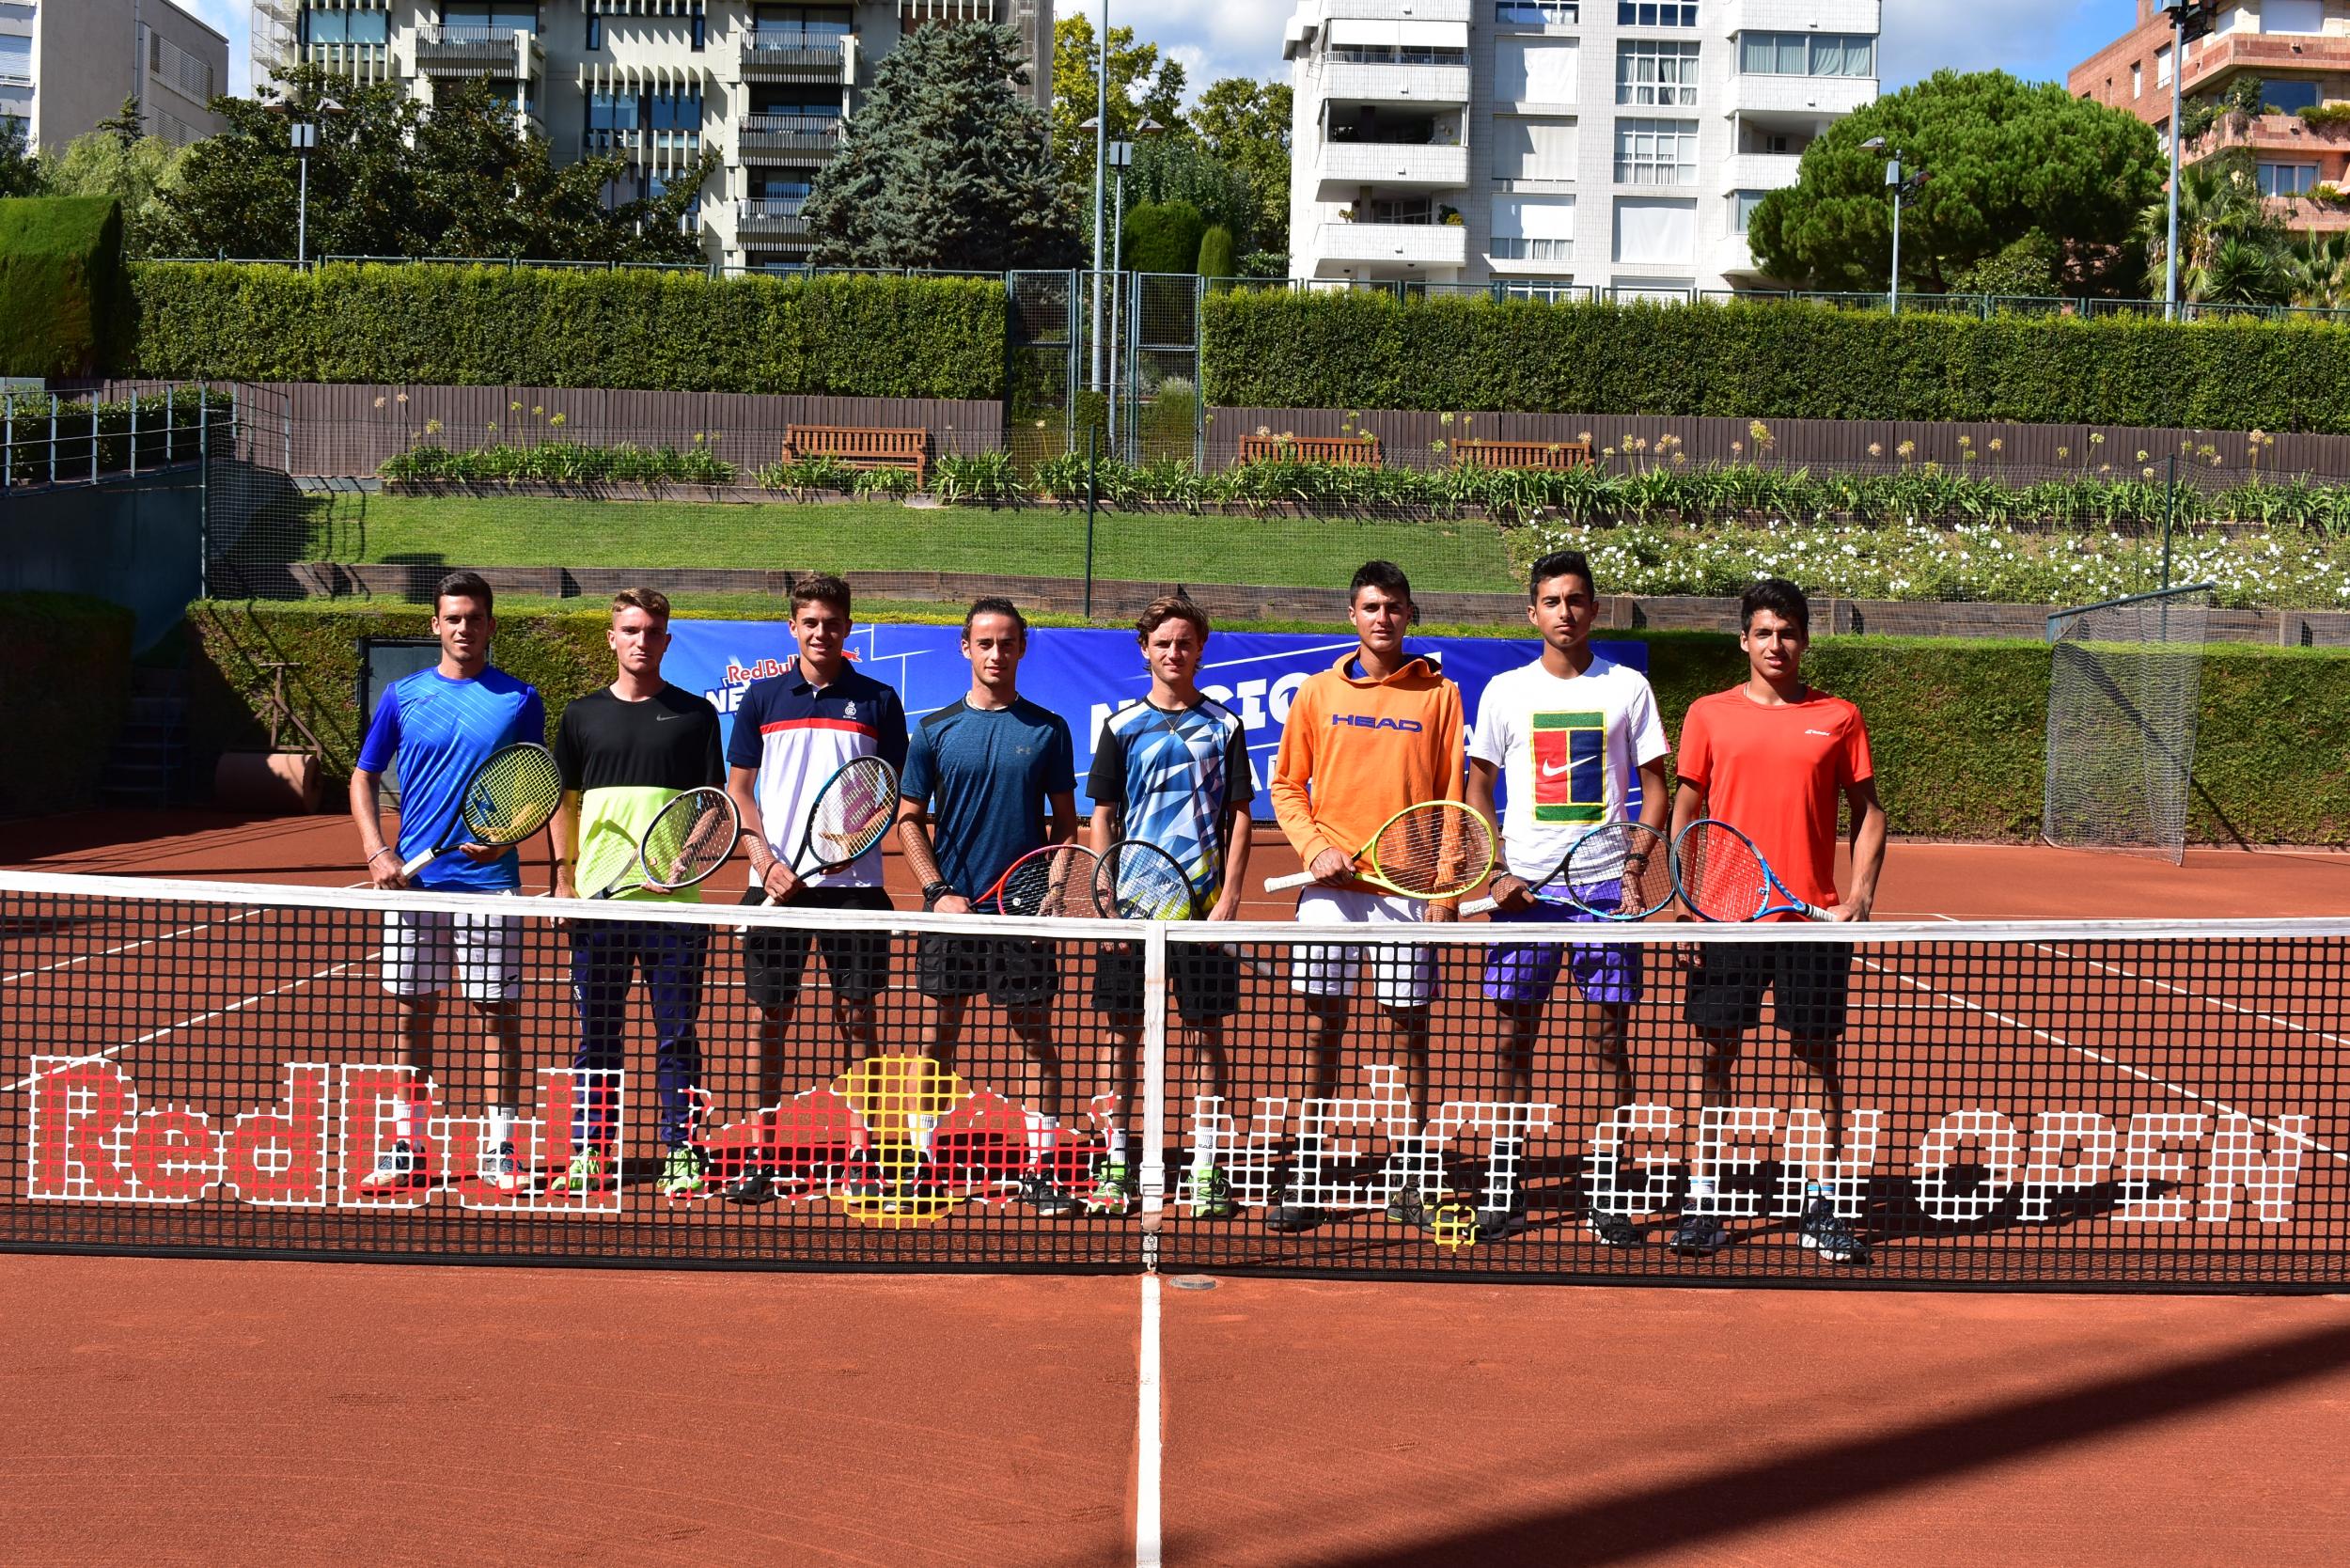 Los 8 tenistas participantes